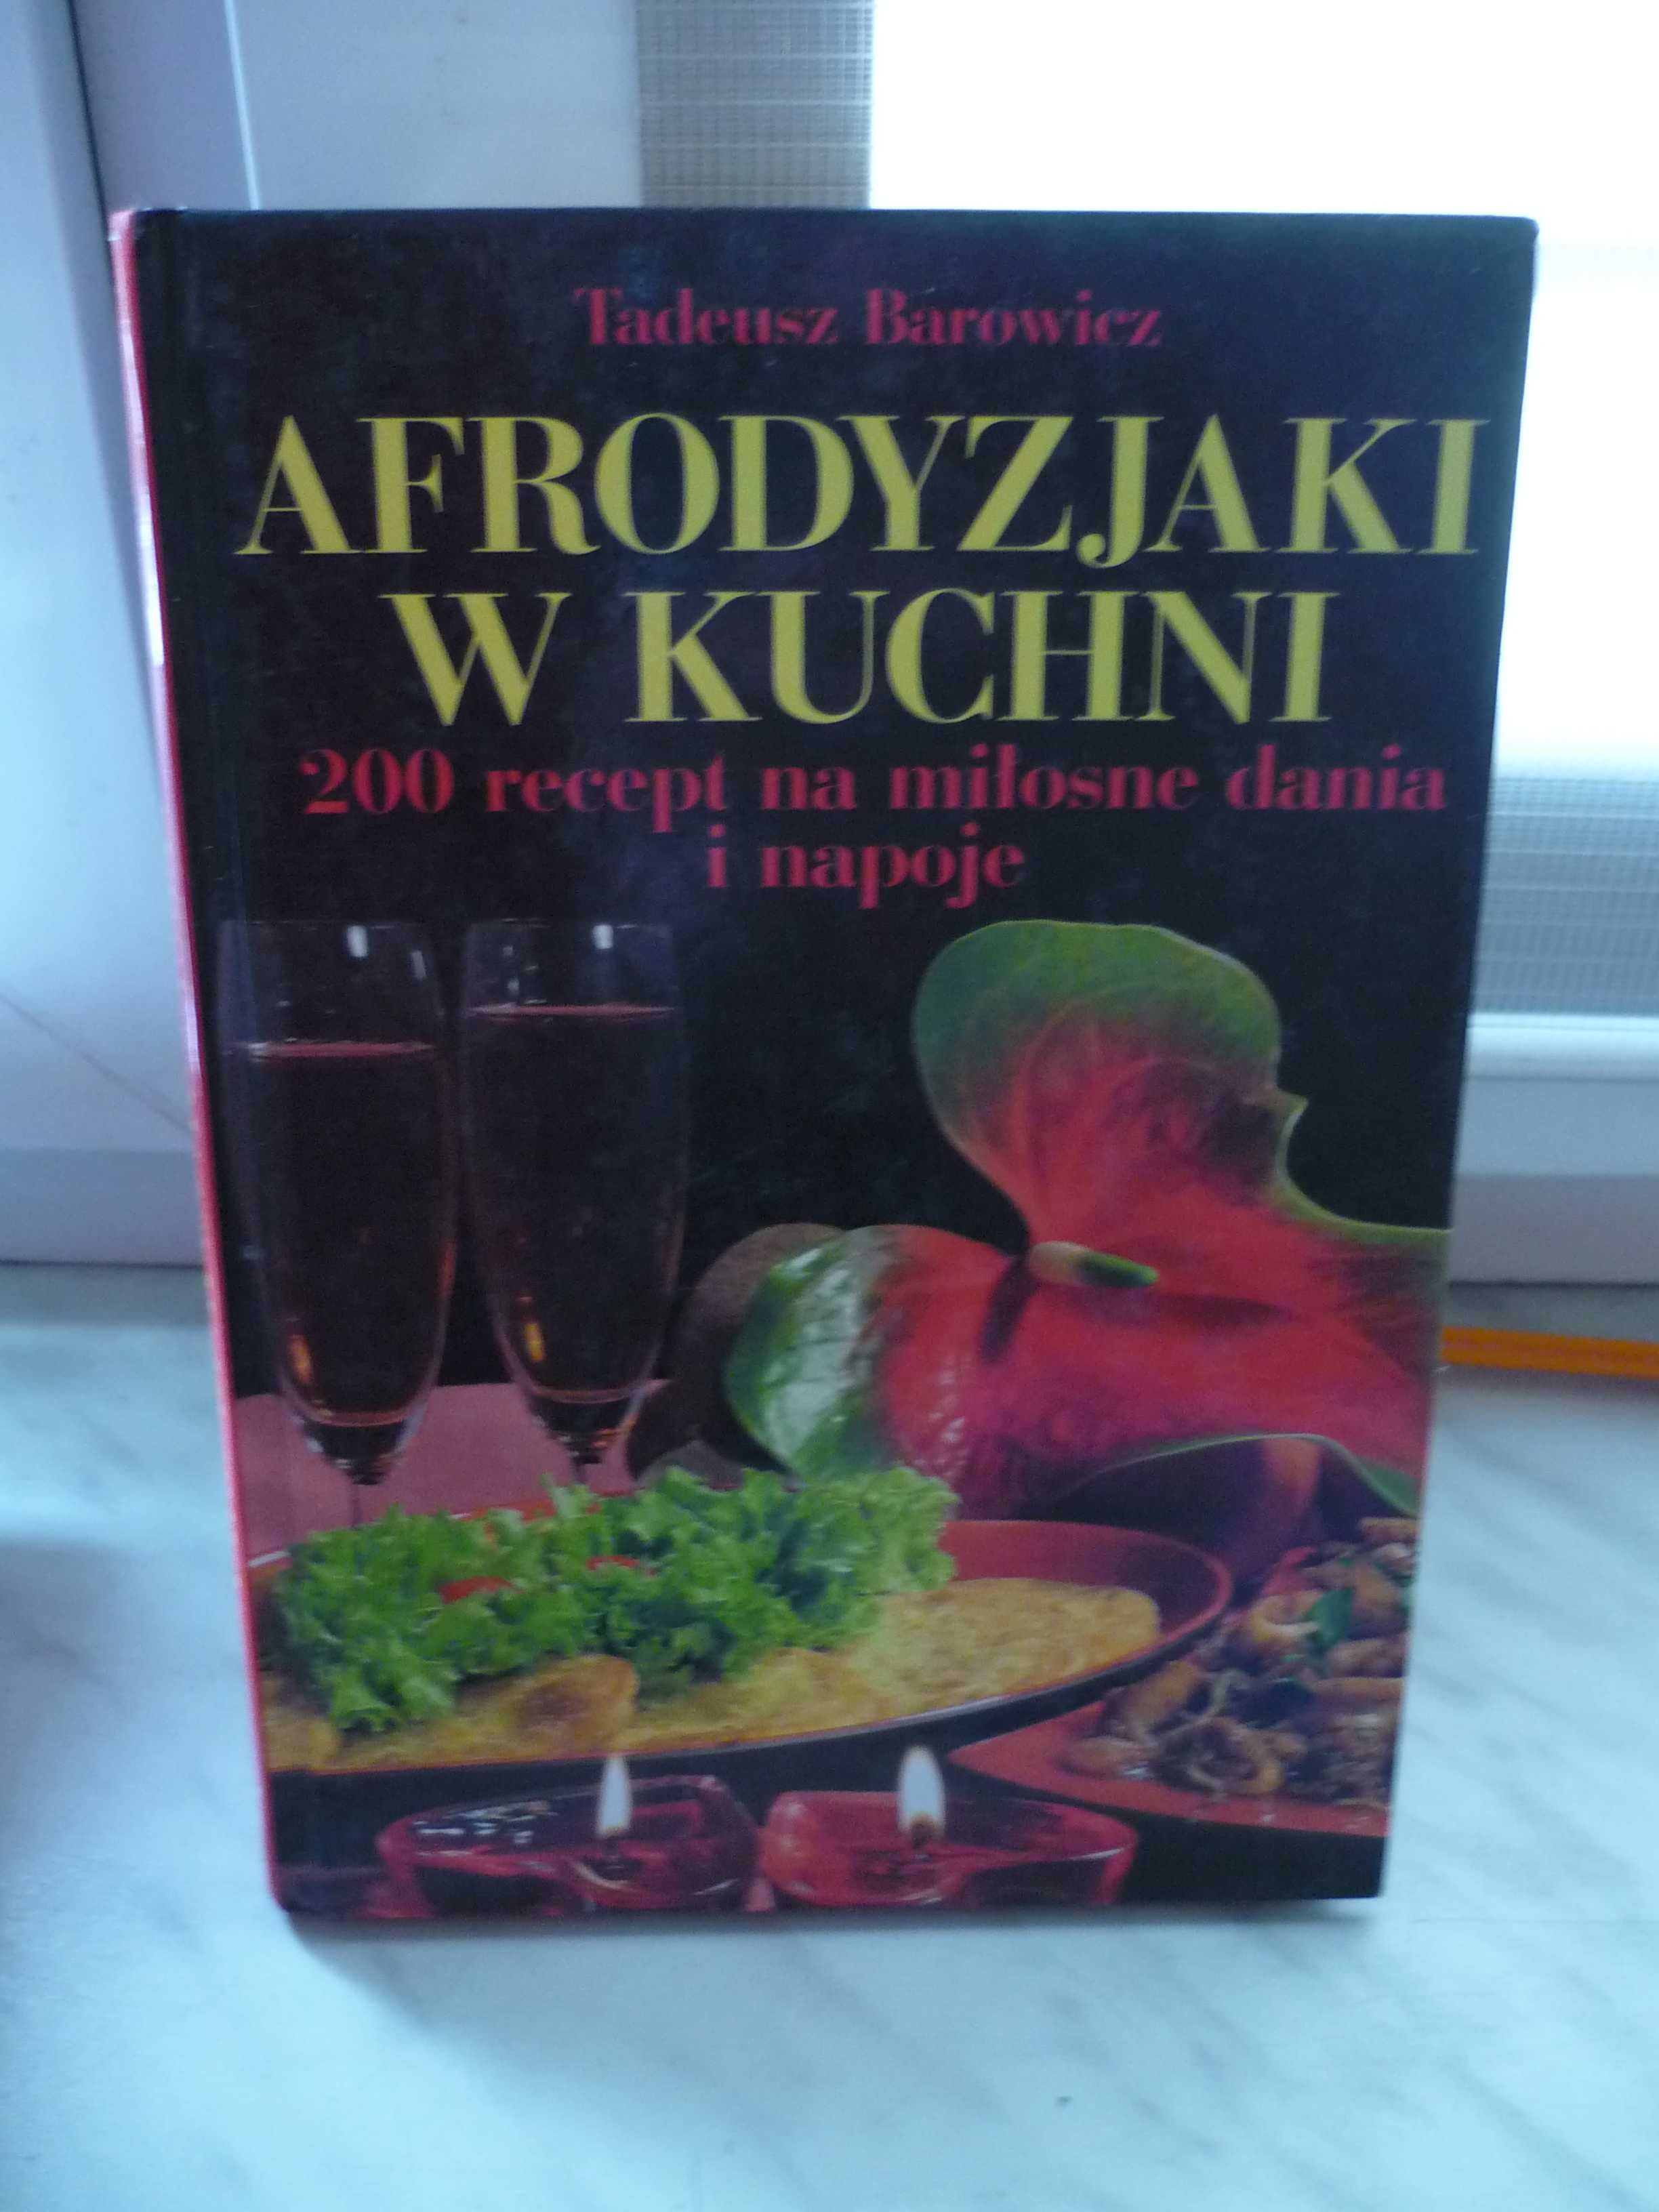 Afrodyzjaki w kuchni , Tadeusz Barowicz.